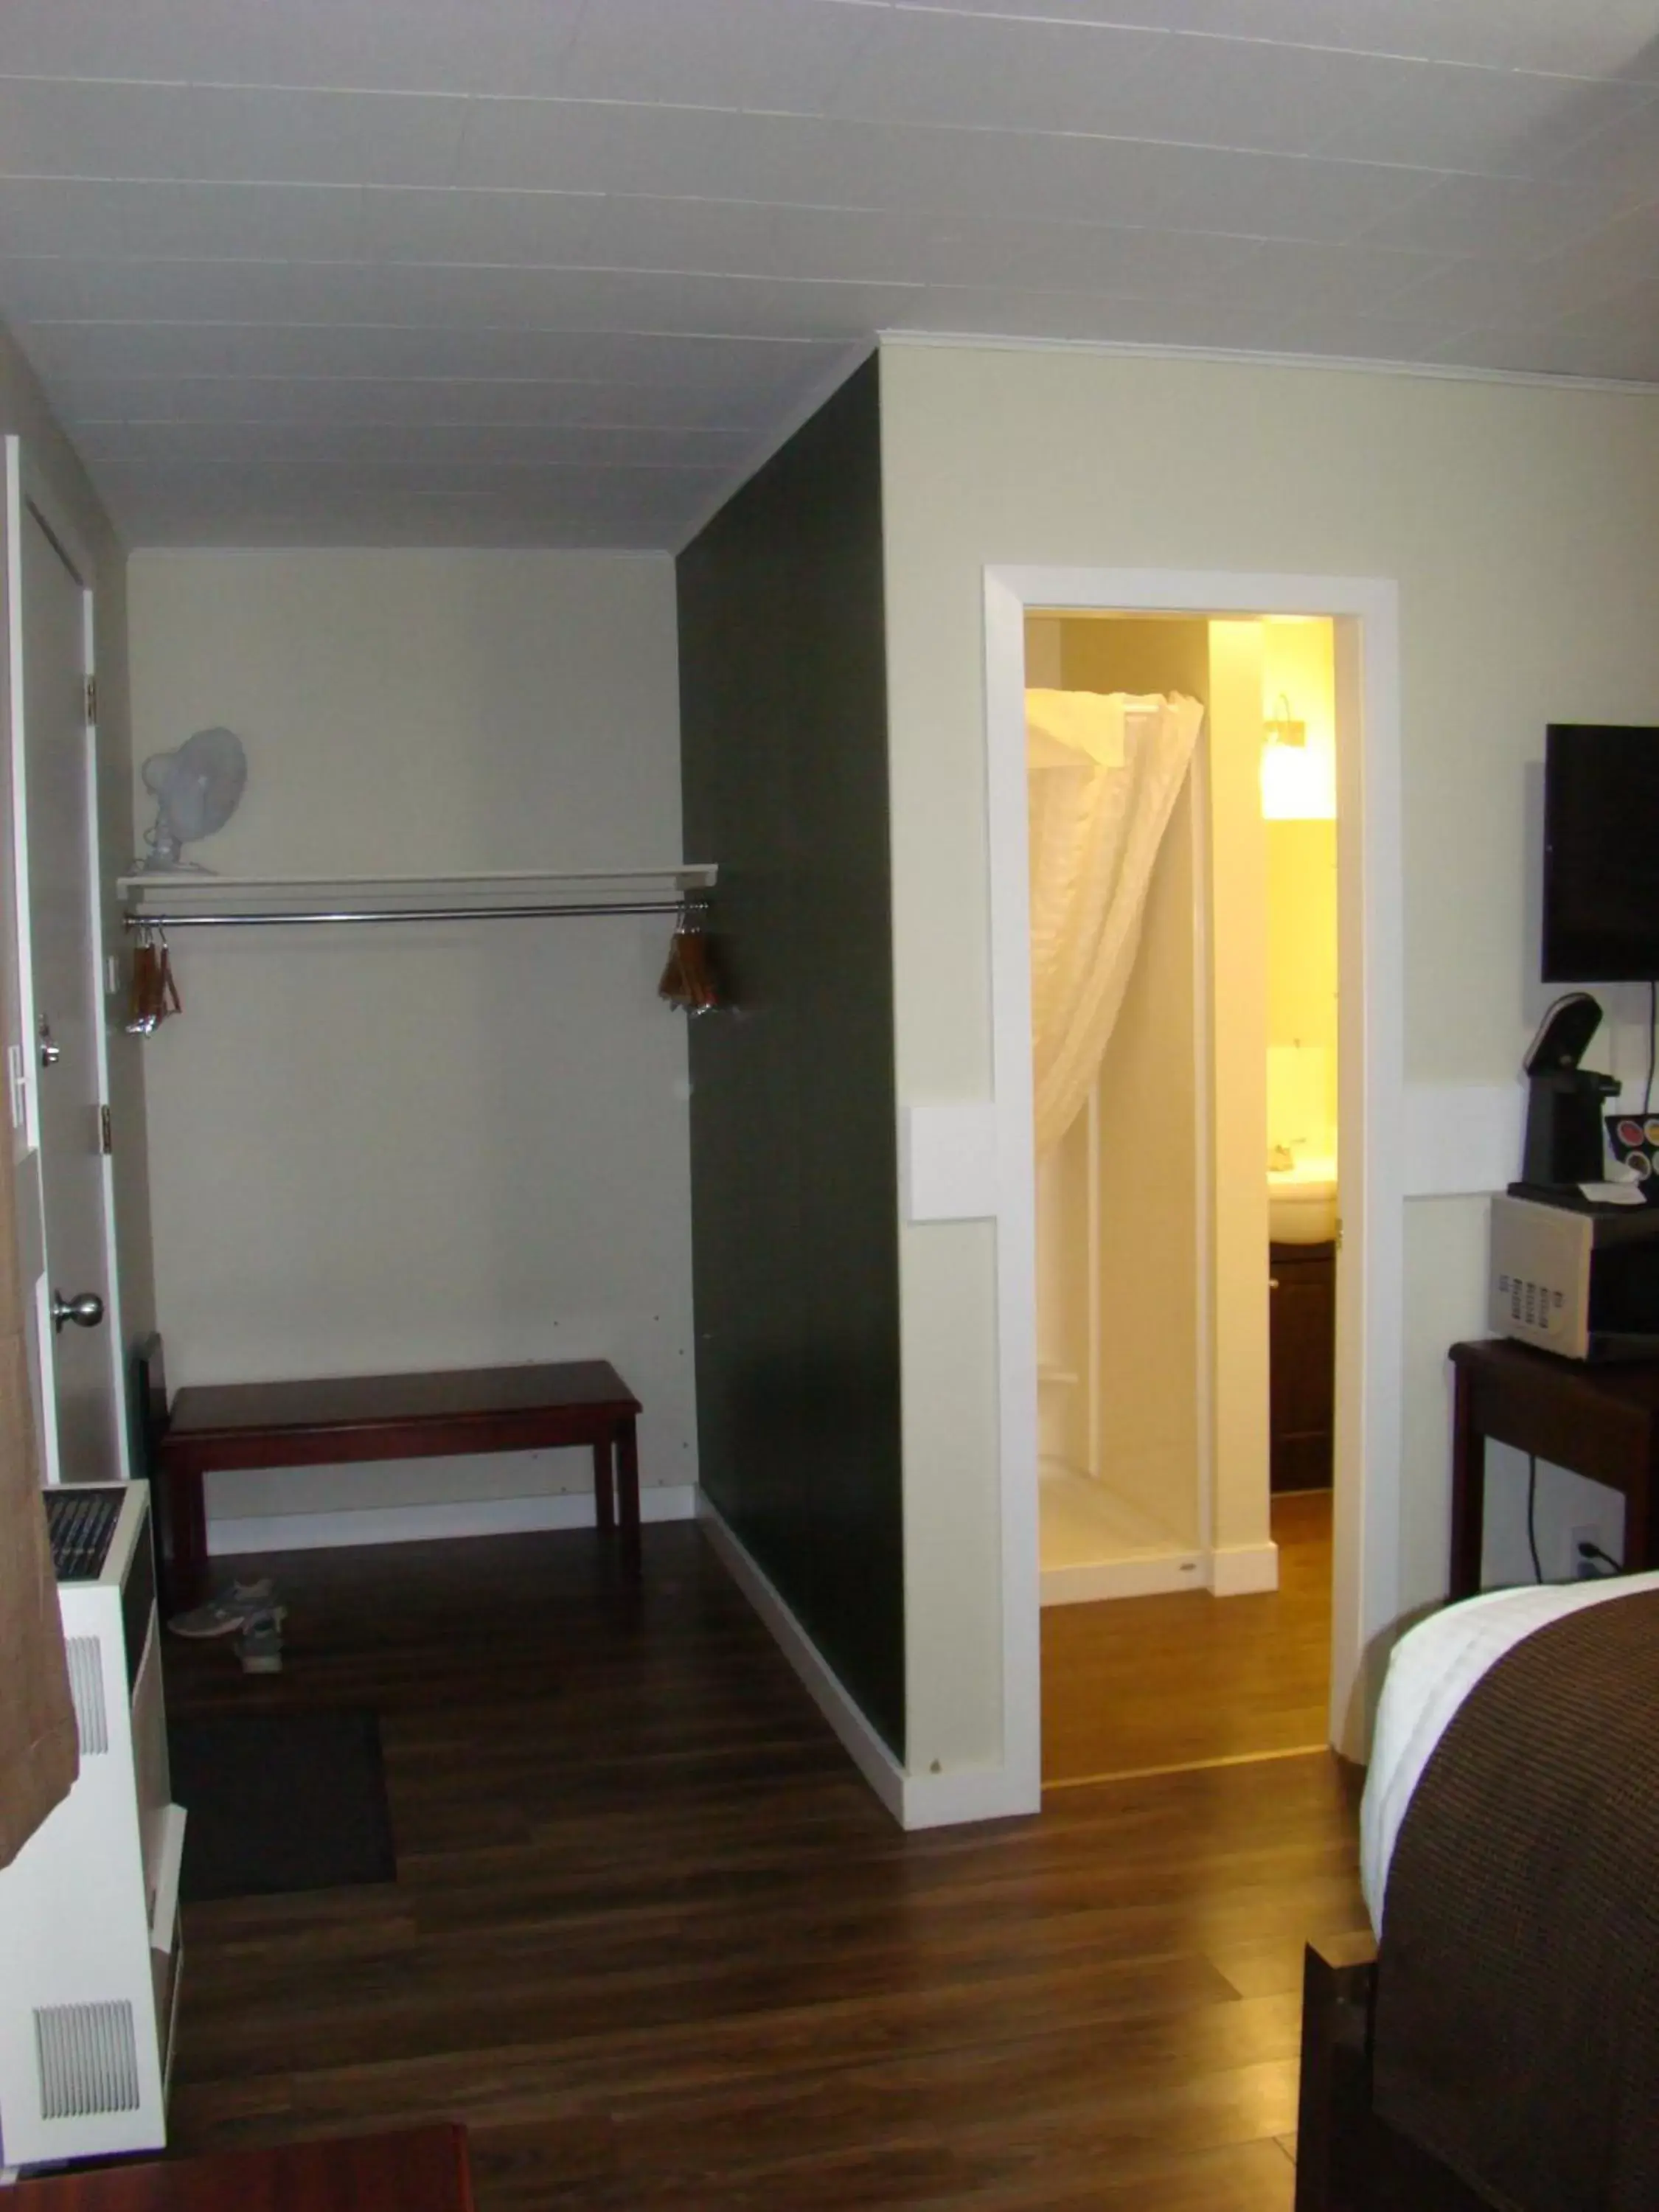 Bedroom, TV/Entertainment Center in Paddock Inn